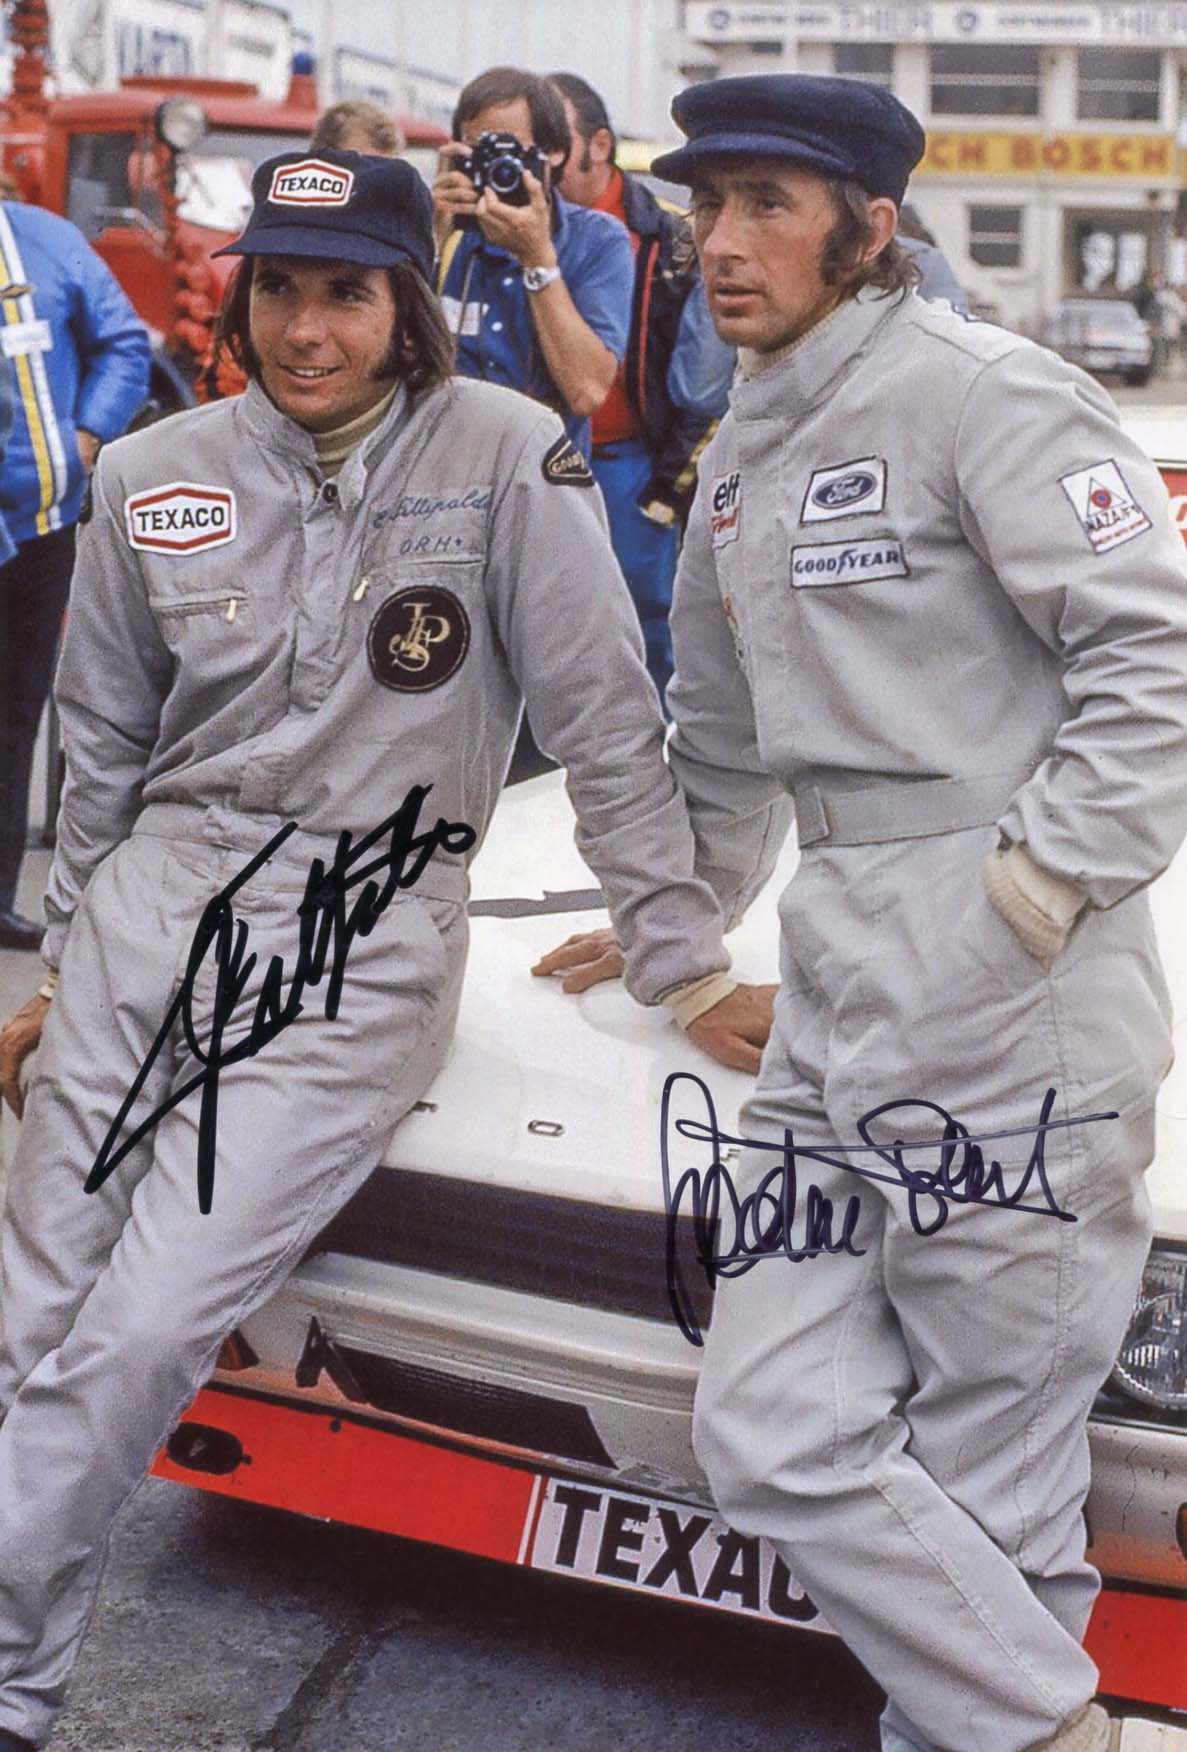 Jackie &amp; Emerson Stewart &amp; Fittipaldi Autograph Autogramm | ID 7889275453589